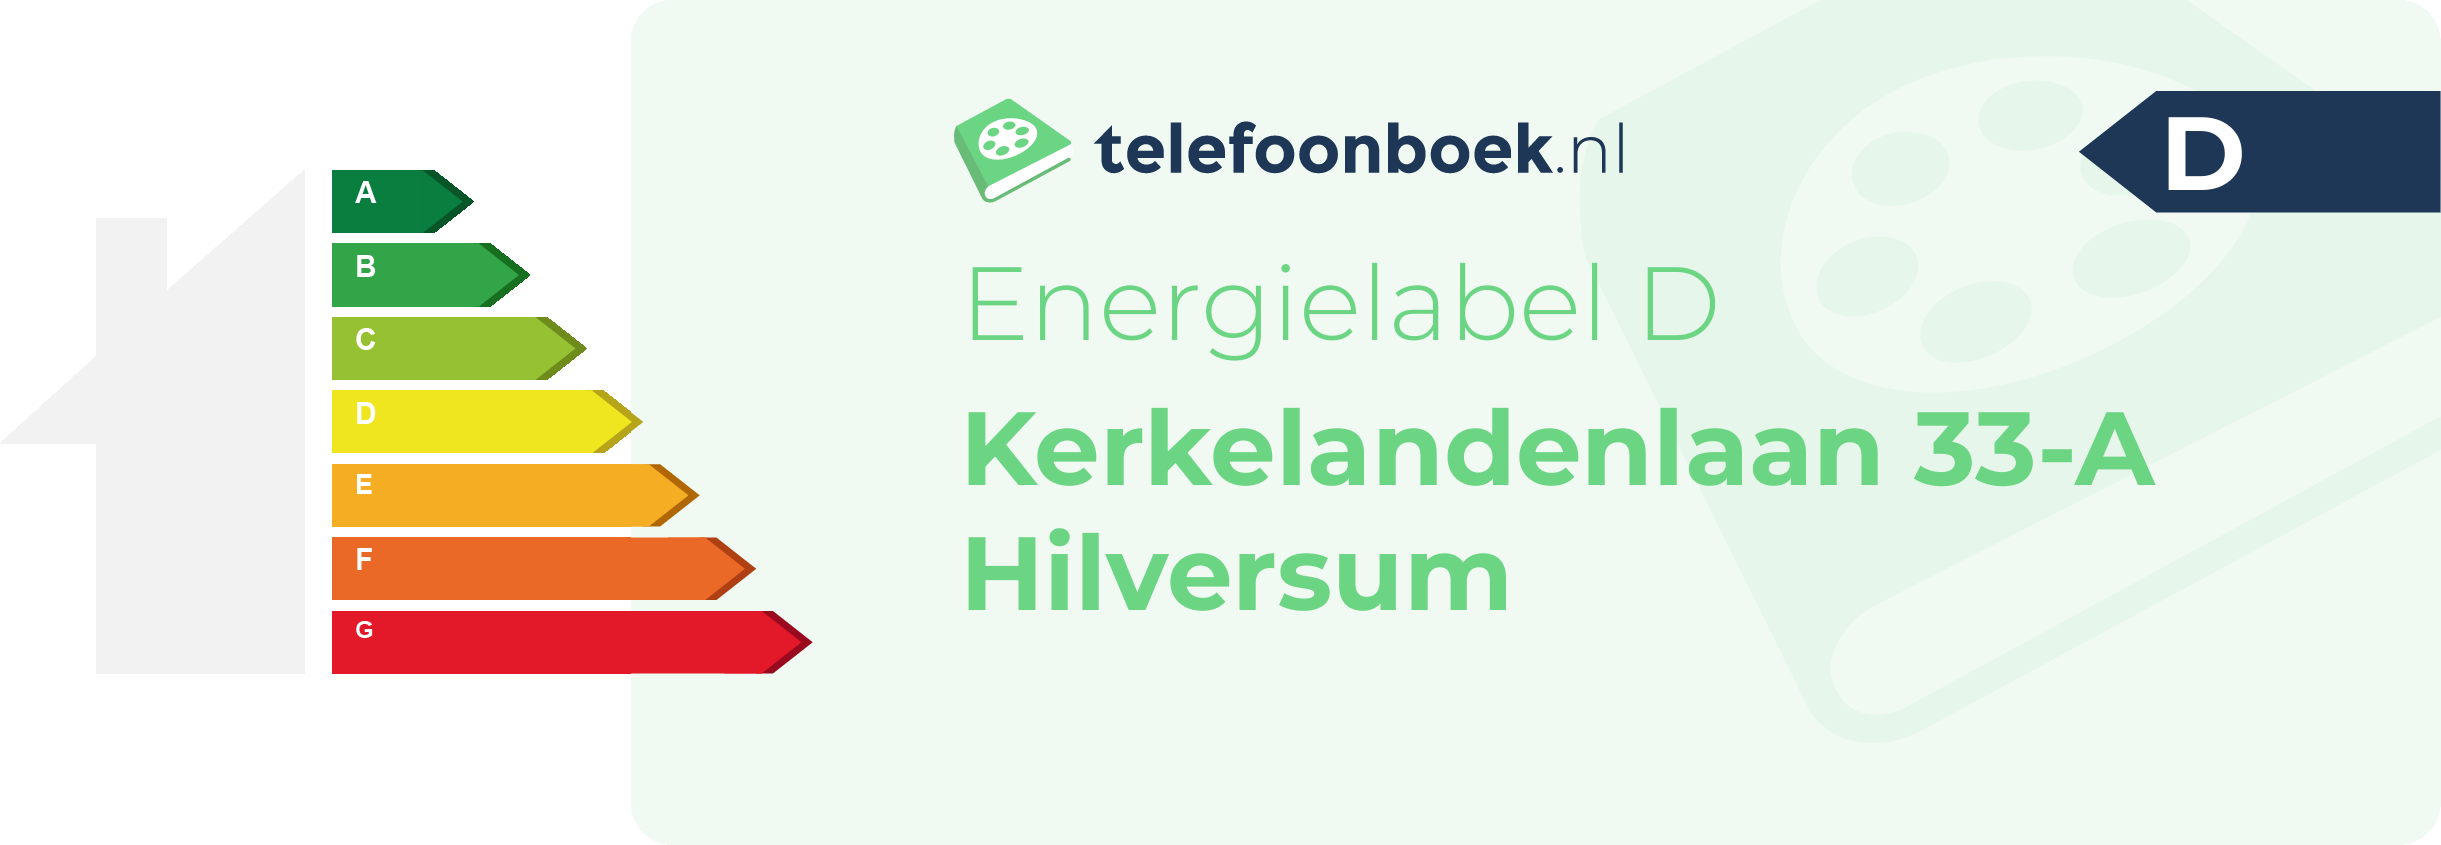 Energielabel Kerkelandenlaan 33-A Hilversum